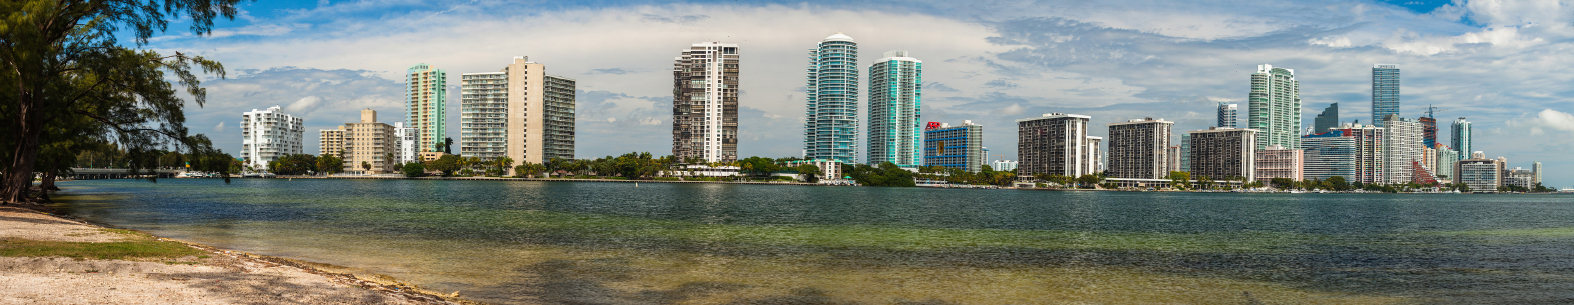 VR Business Brokers Miami,Coral Gables, FL - Financing Options,Opciones de Financiamiento